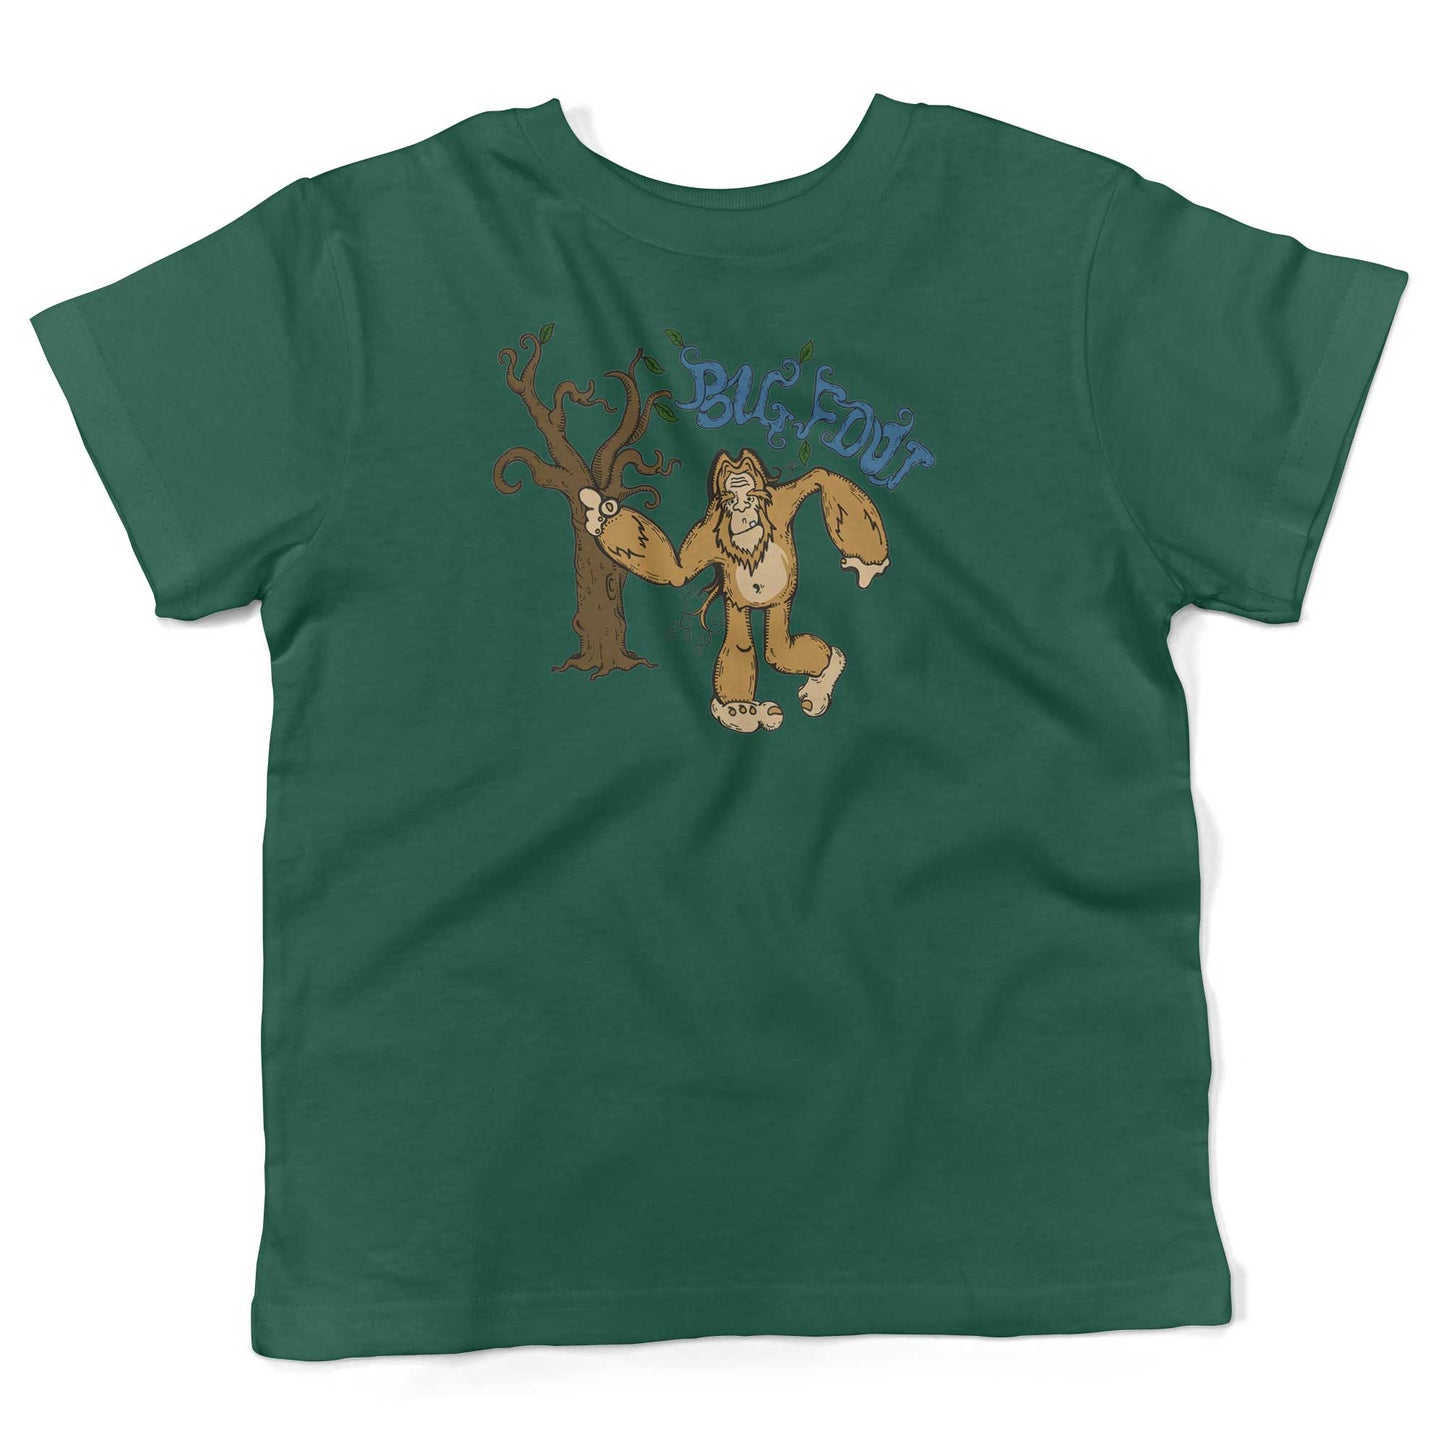 Bigfoot Toddler Shirt-Kelly Green-2T